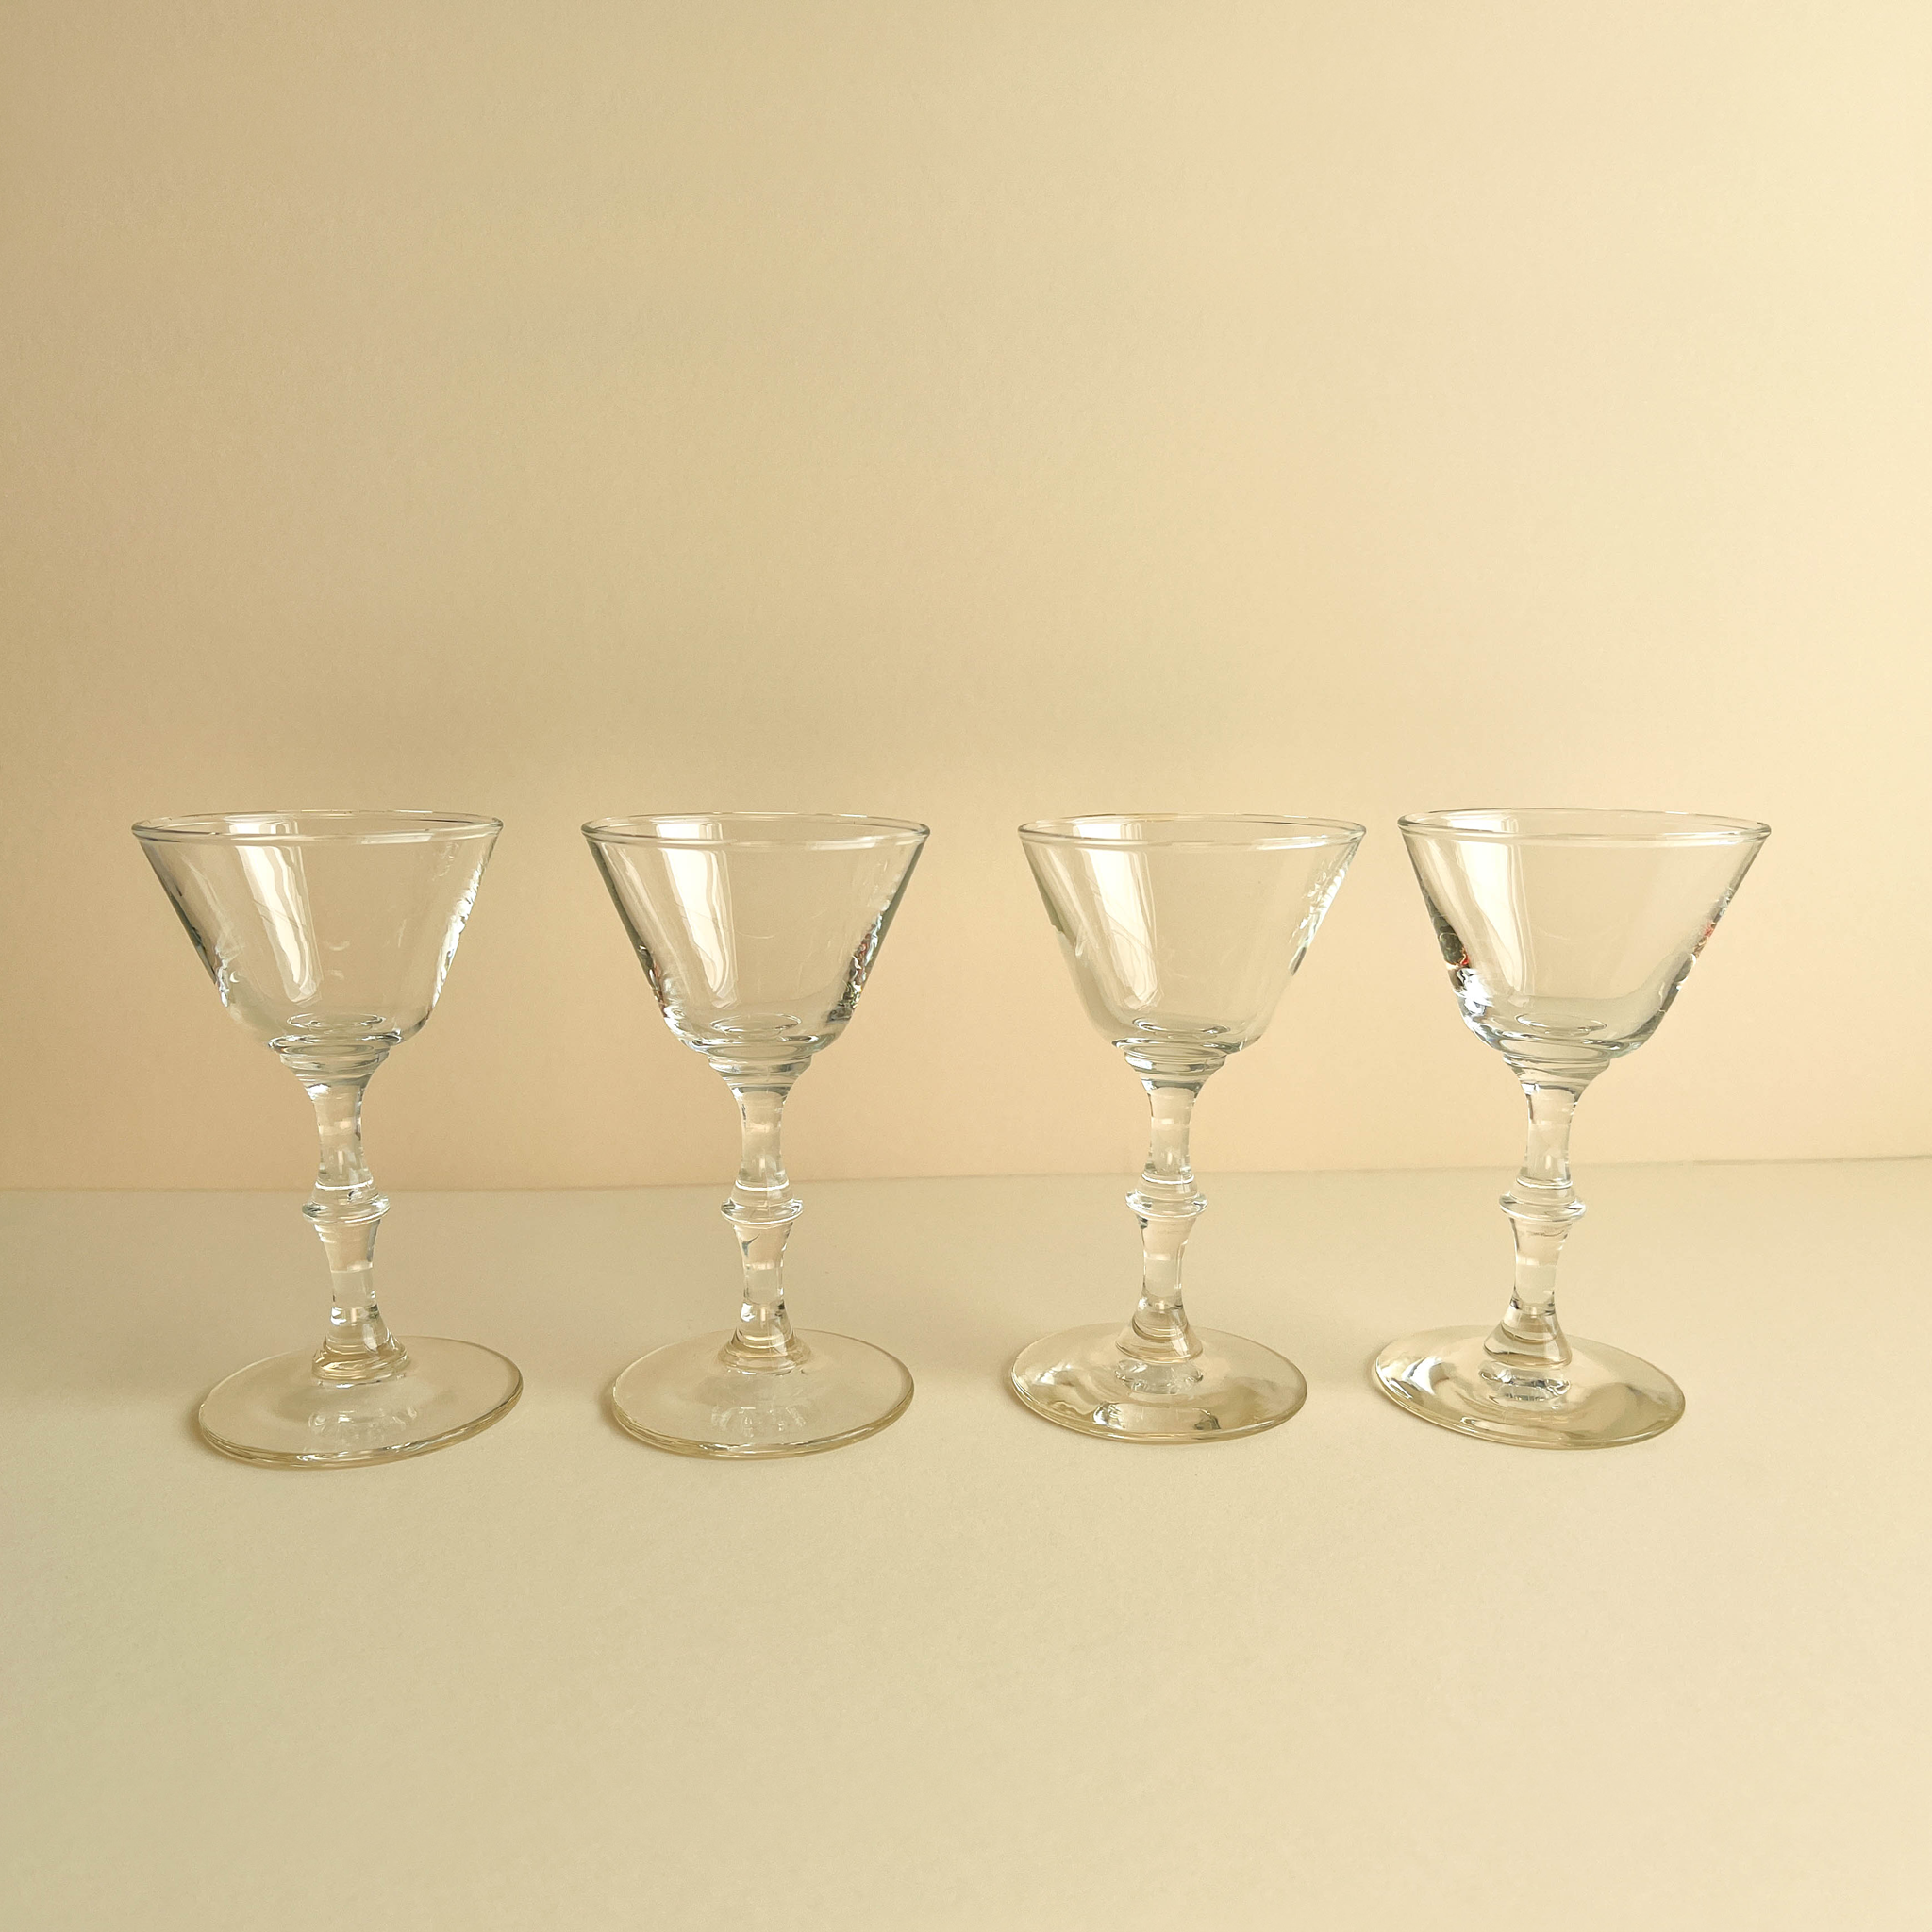 Vintage Etched Martini Glasses